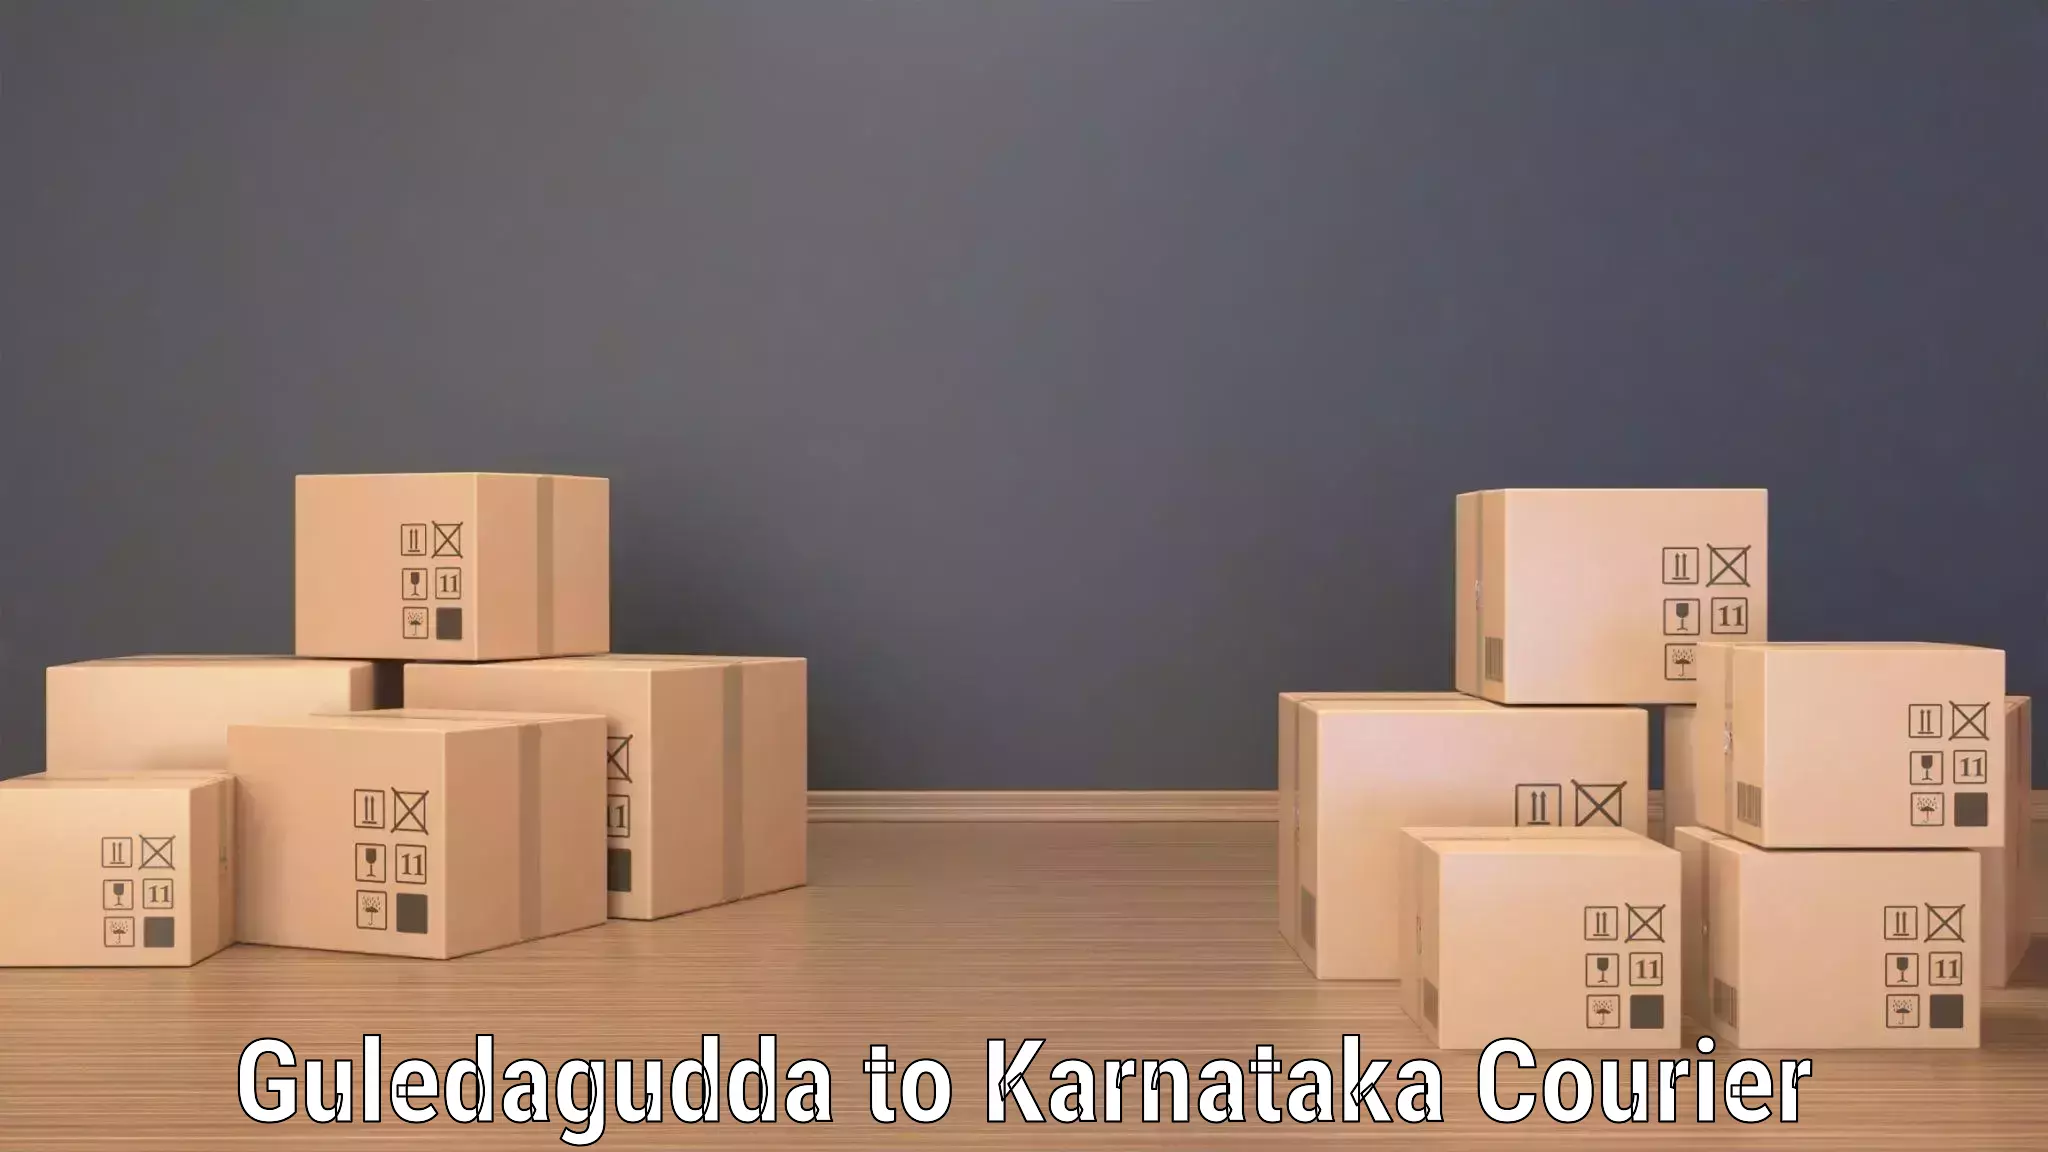 Express courier capabilities Guledagudda to Udupi